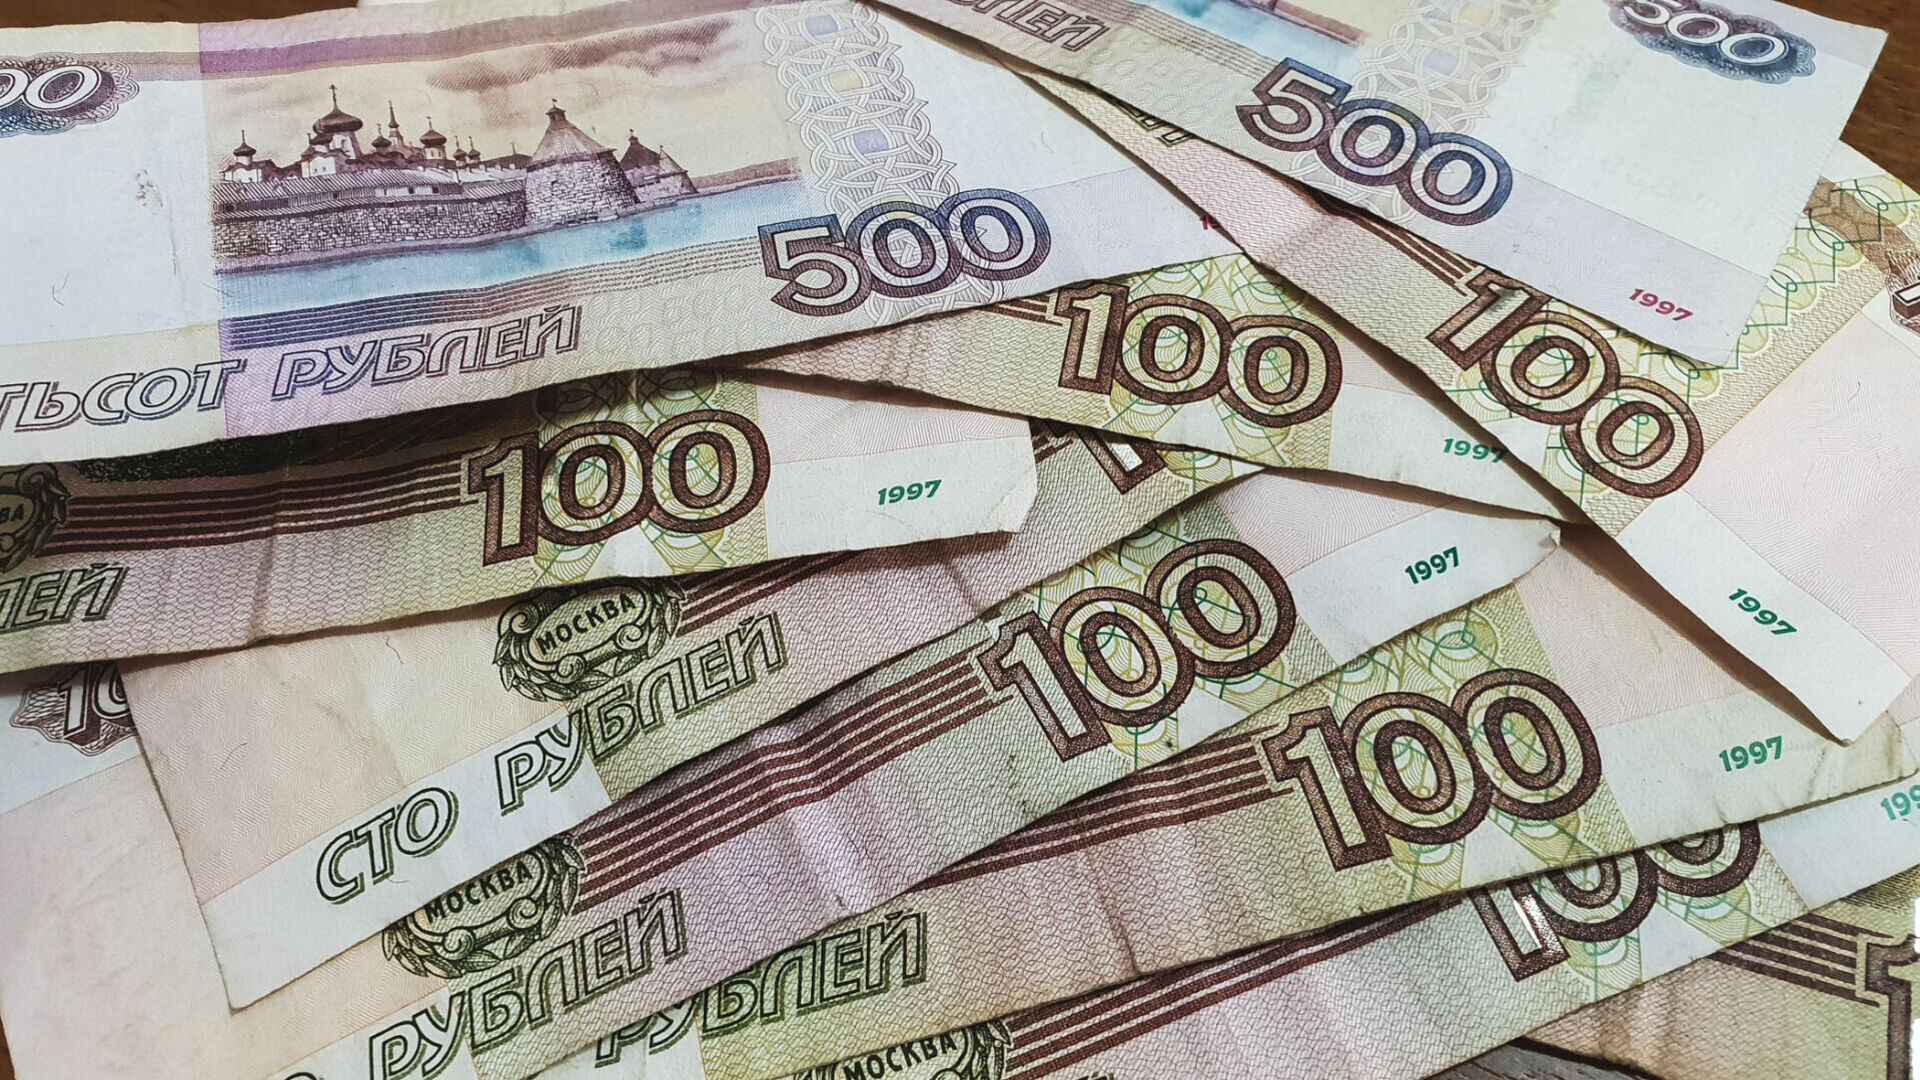 Бывшая сотрудница страховой компании в Ижевске обманула граждан на 600 тысяч рублей